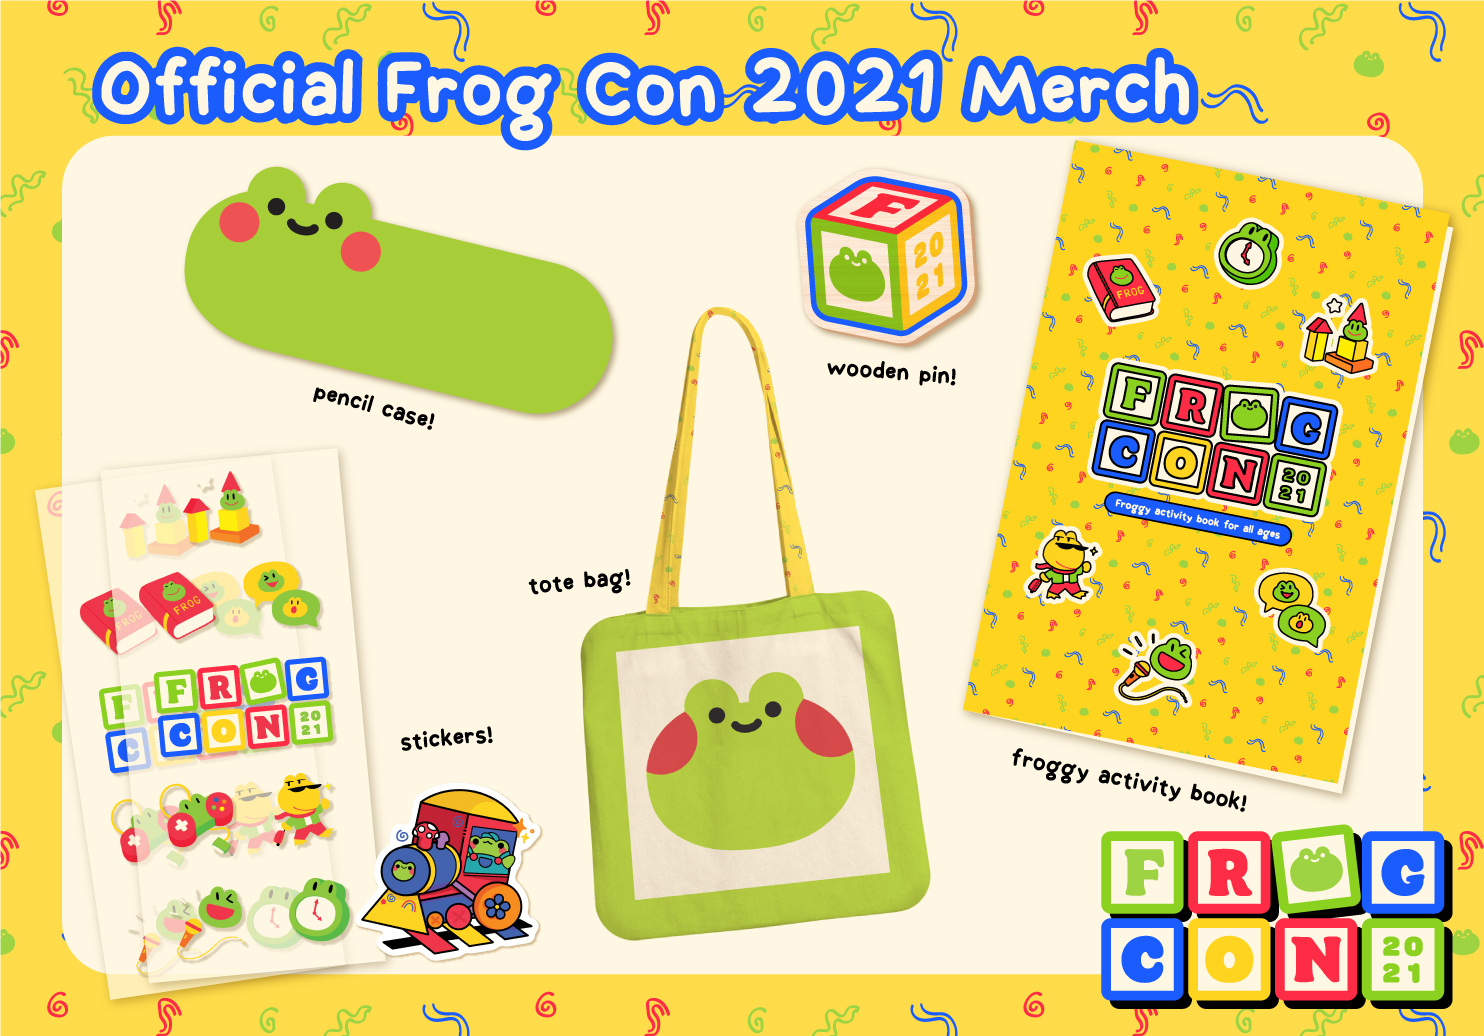 Official Frog Con 2021 merch